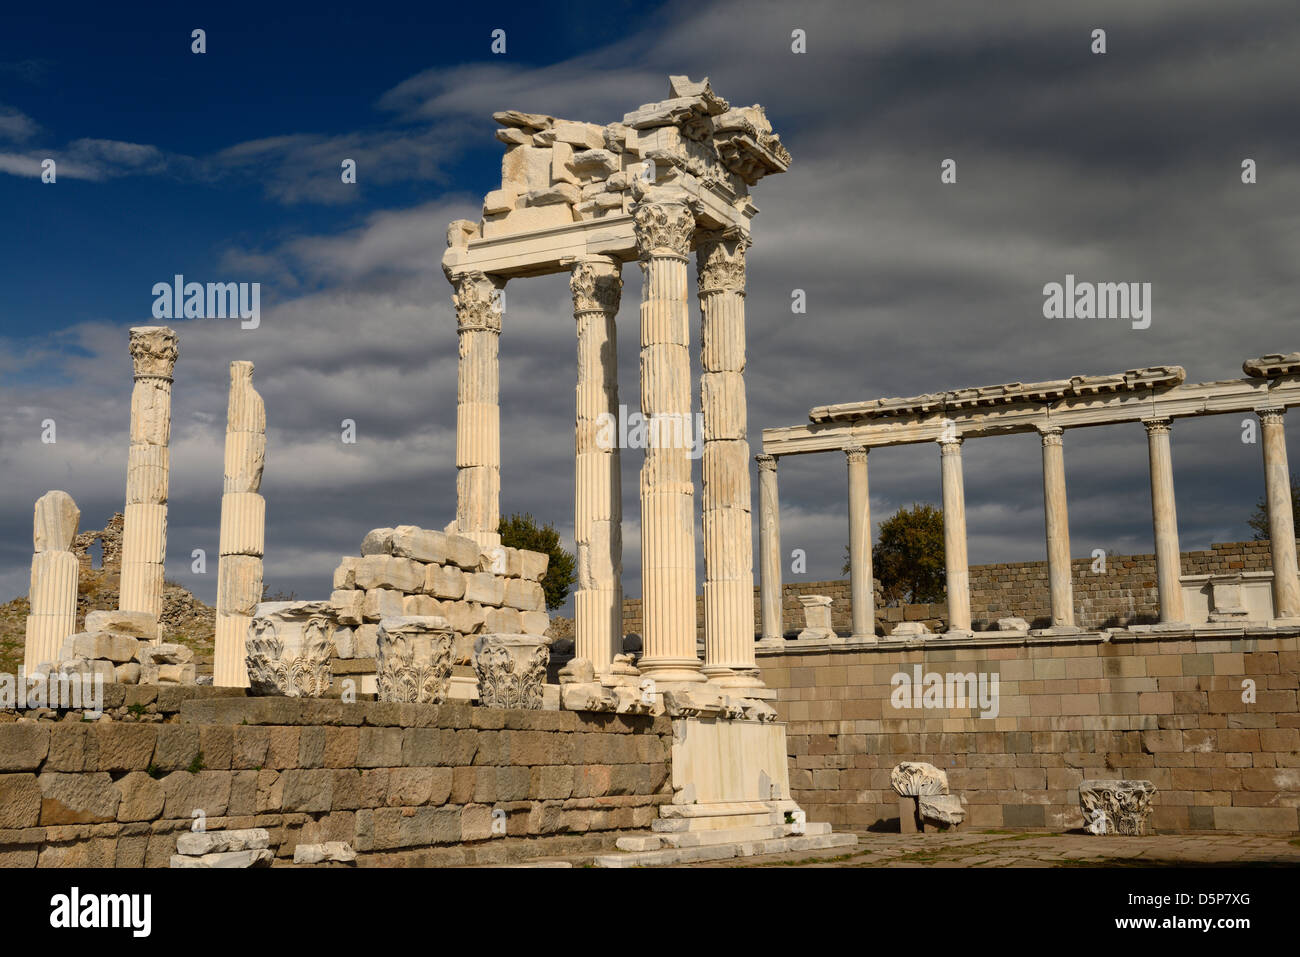 Marmo bianco colonne corinzie rovine del tempio di Traiano a Pergamon sito archeologico Bergama Turchia Foto Stock